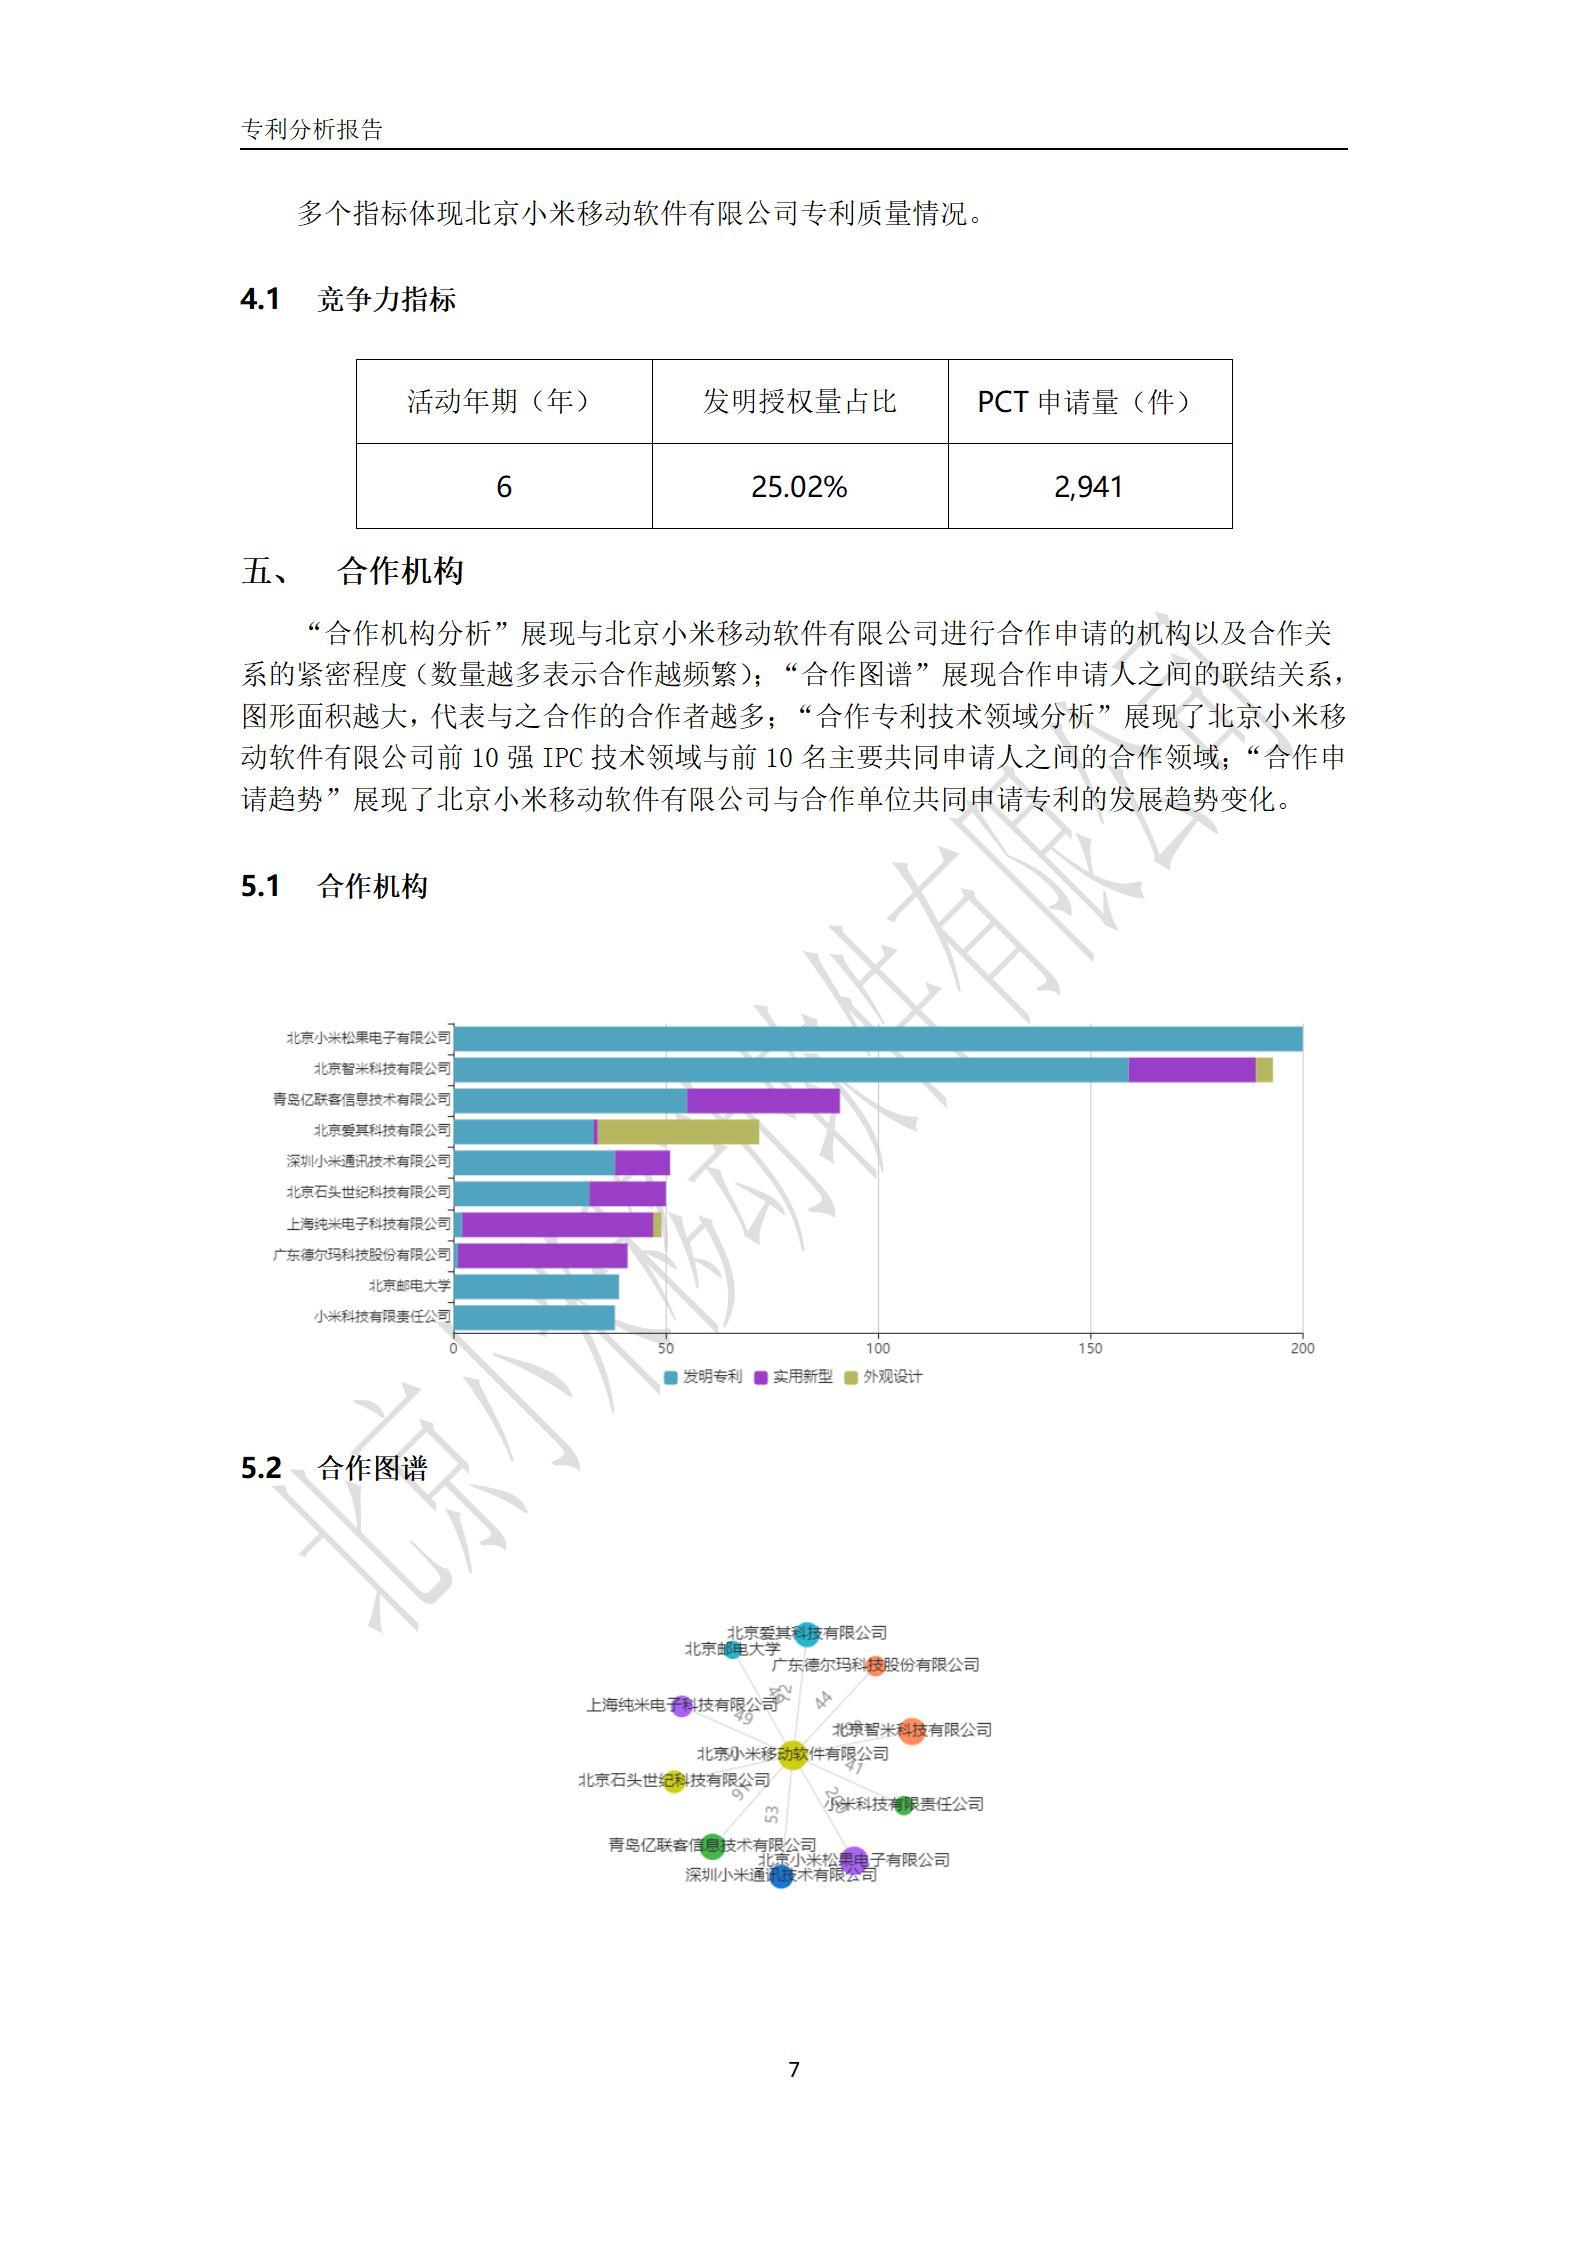 北京小米移动软件有限公司专利分析报告-7.jpg